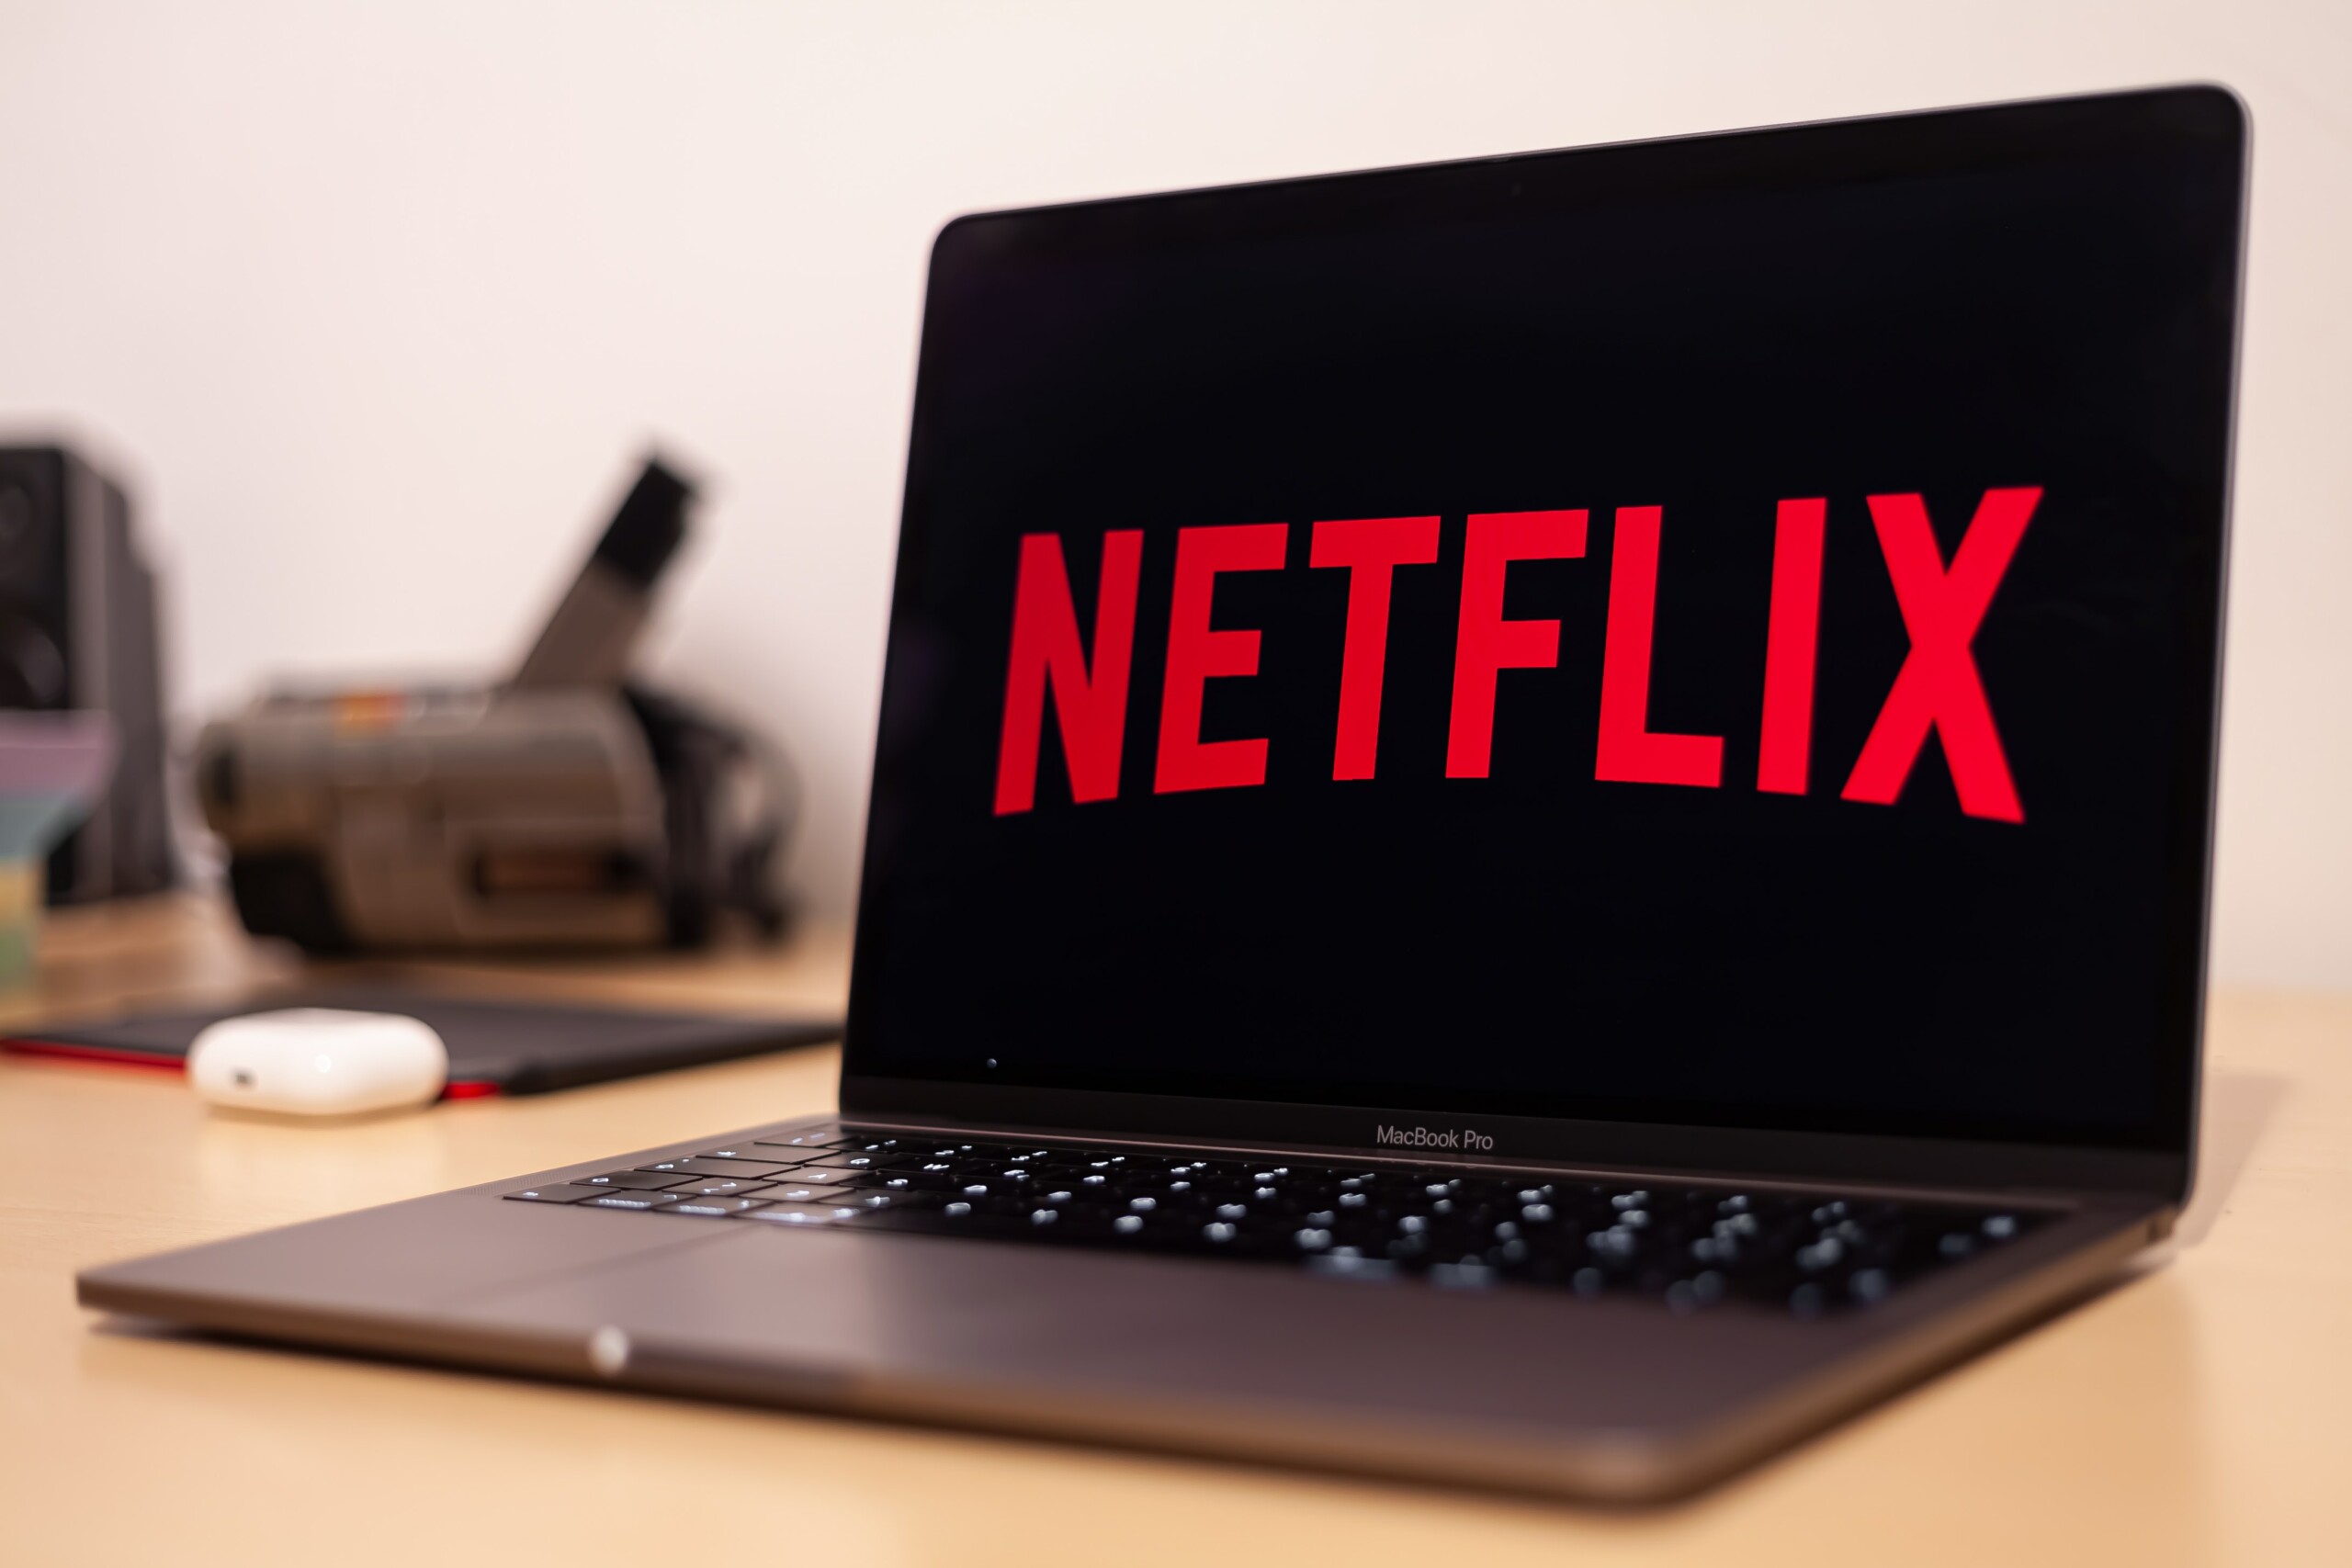 Fãs da Netflix ficarão muito revoltados após revelação de “surpresa” na assinatura com anúncios